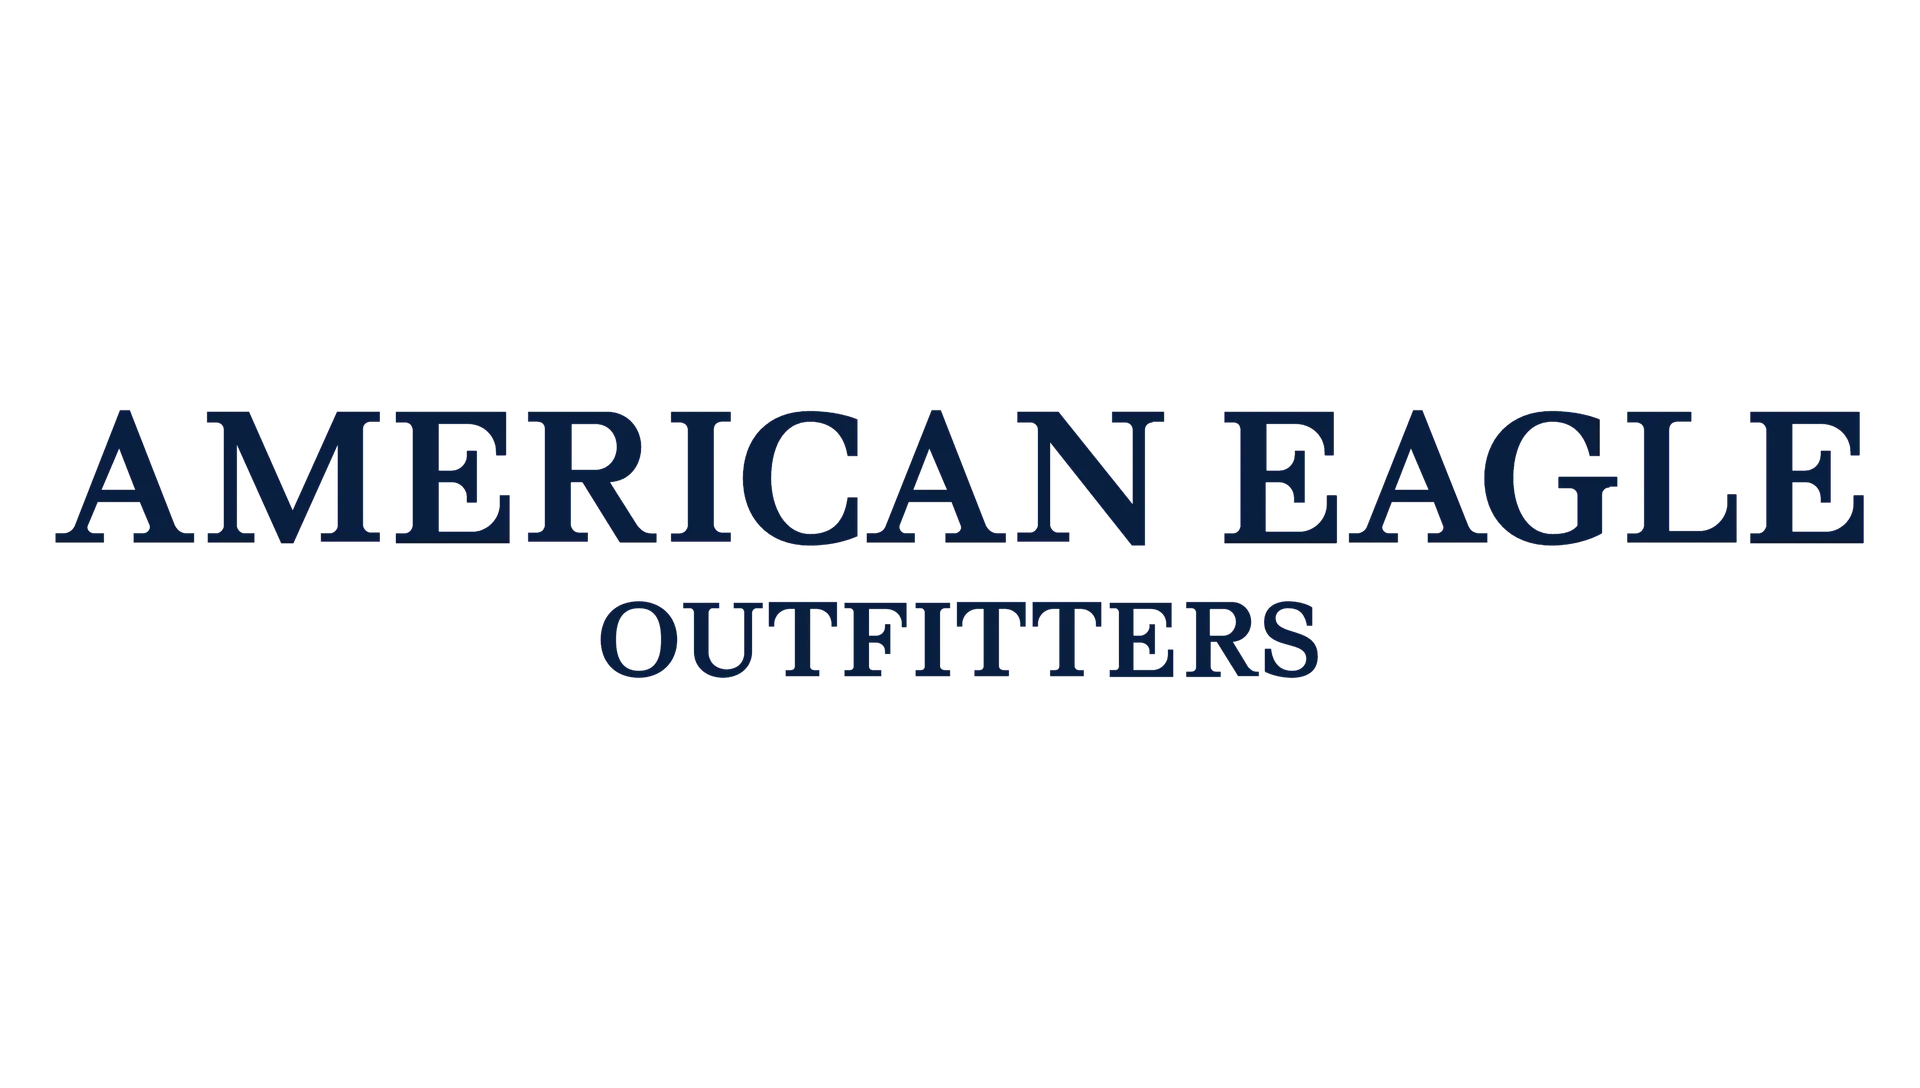 AMERICAN EAGLE logo